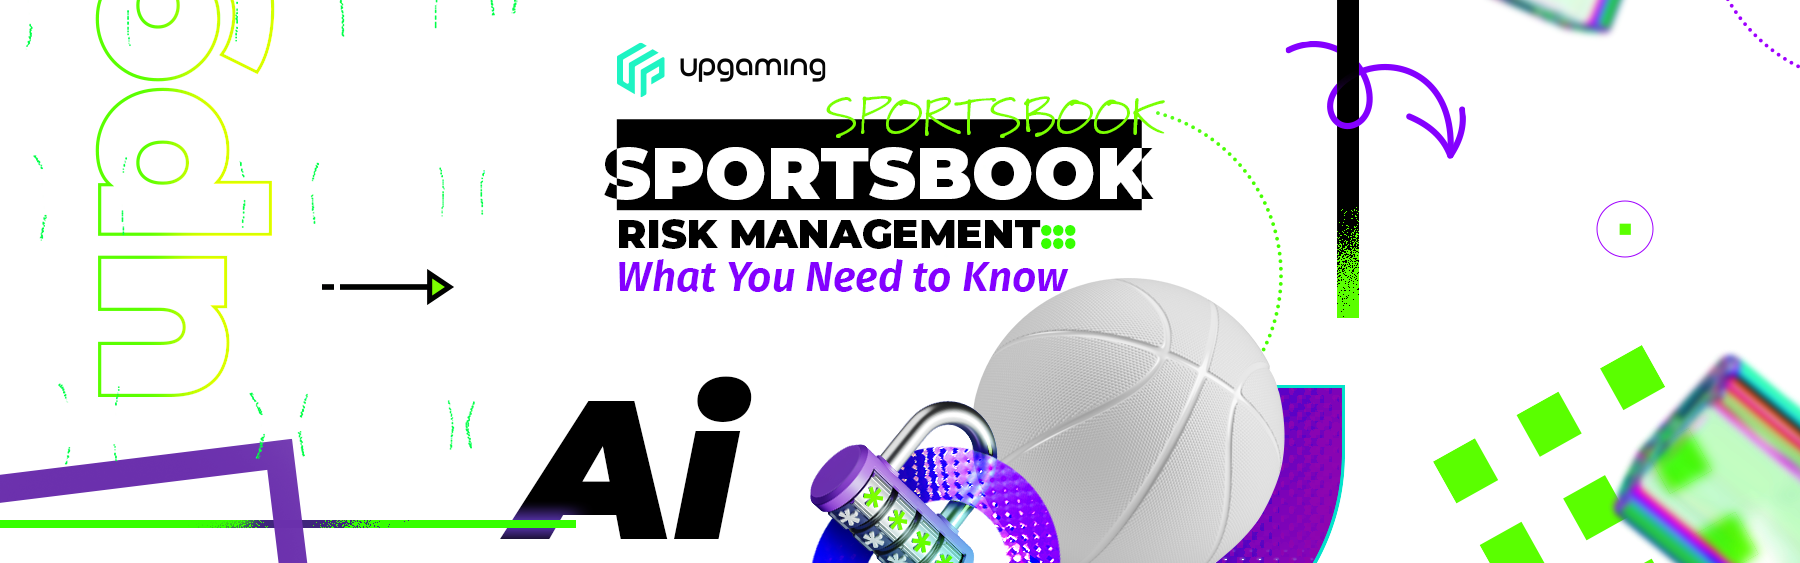 Sportsbook risk management tools